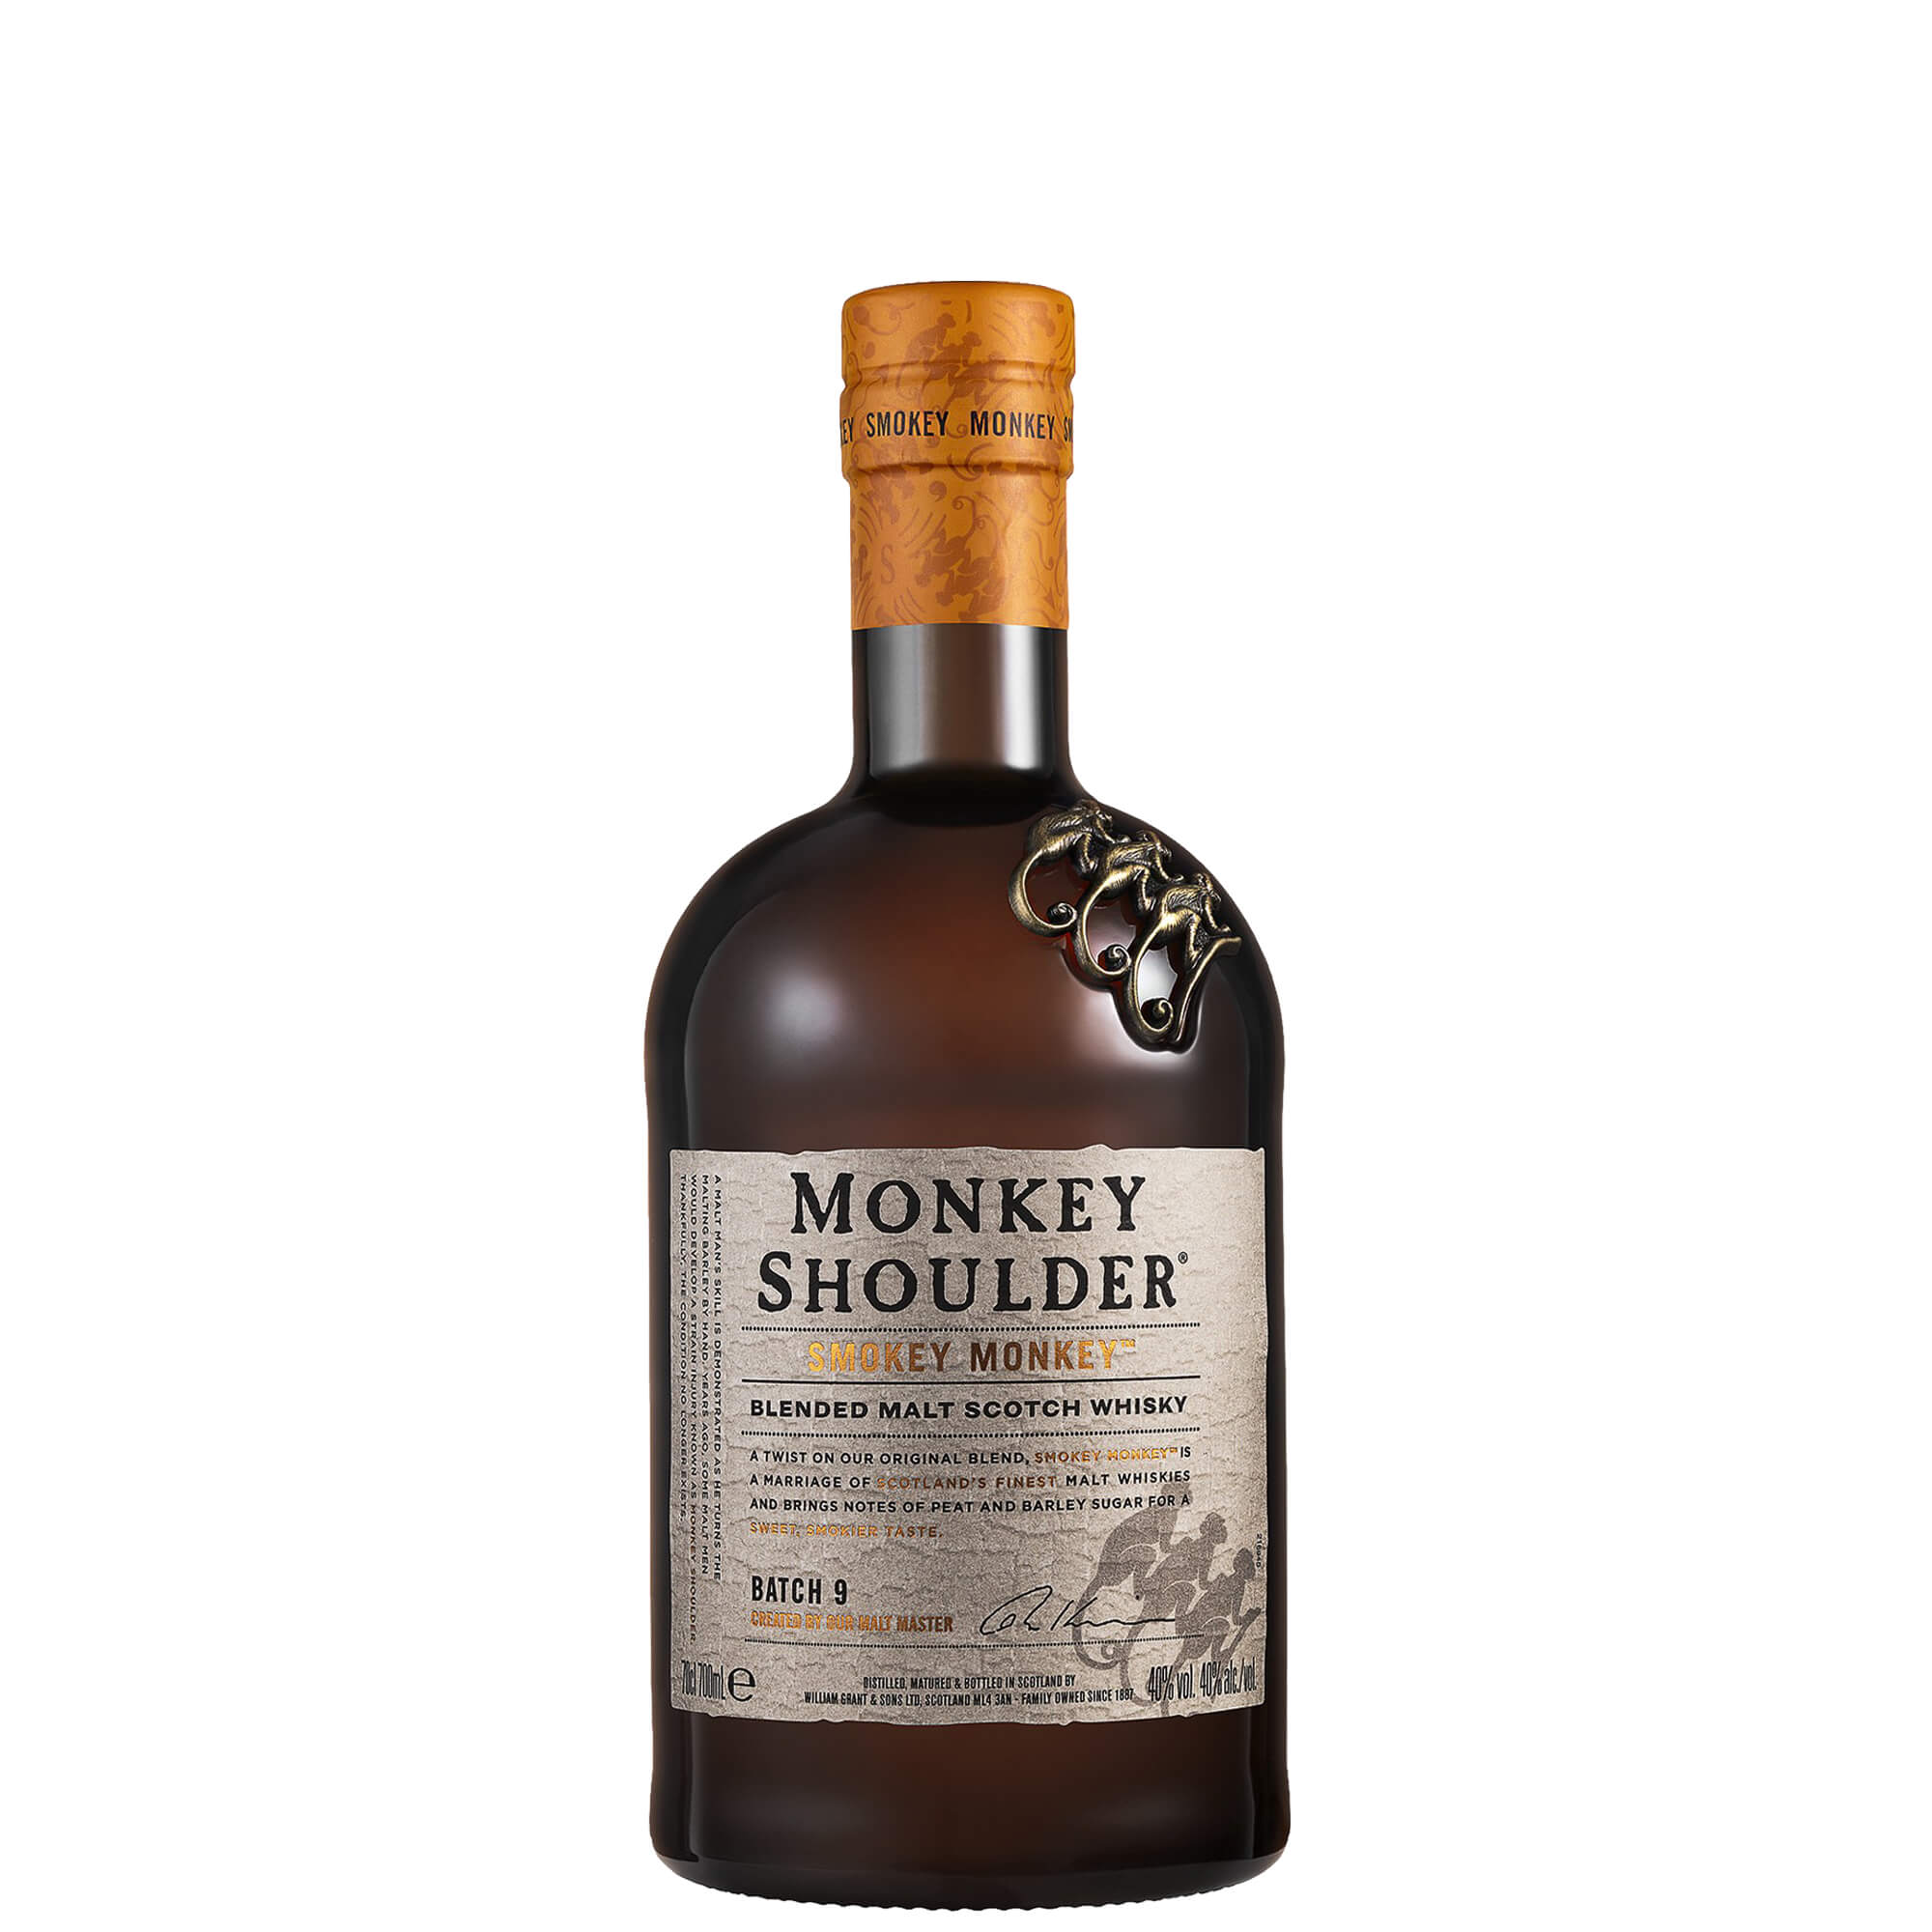 Blended Malt Scotch Whisky Monkey Shoulder Smokey